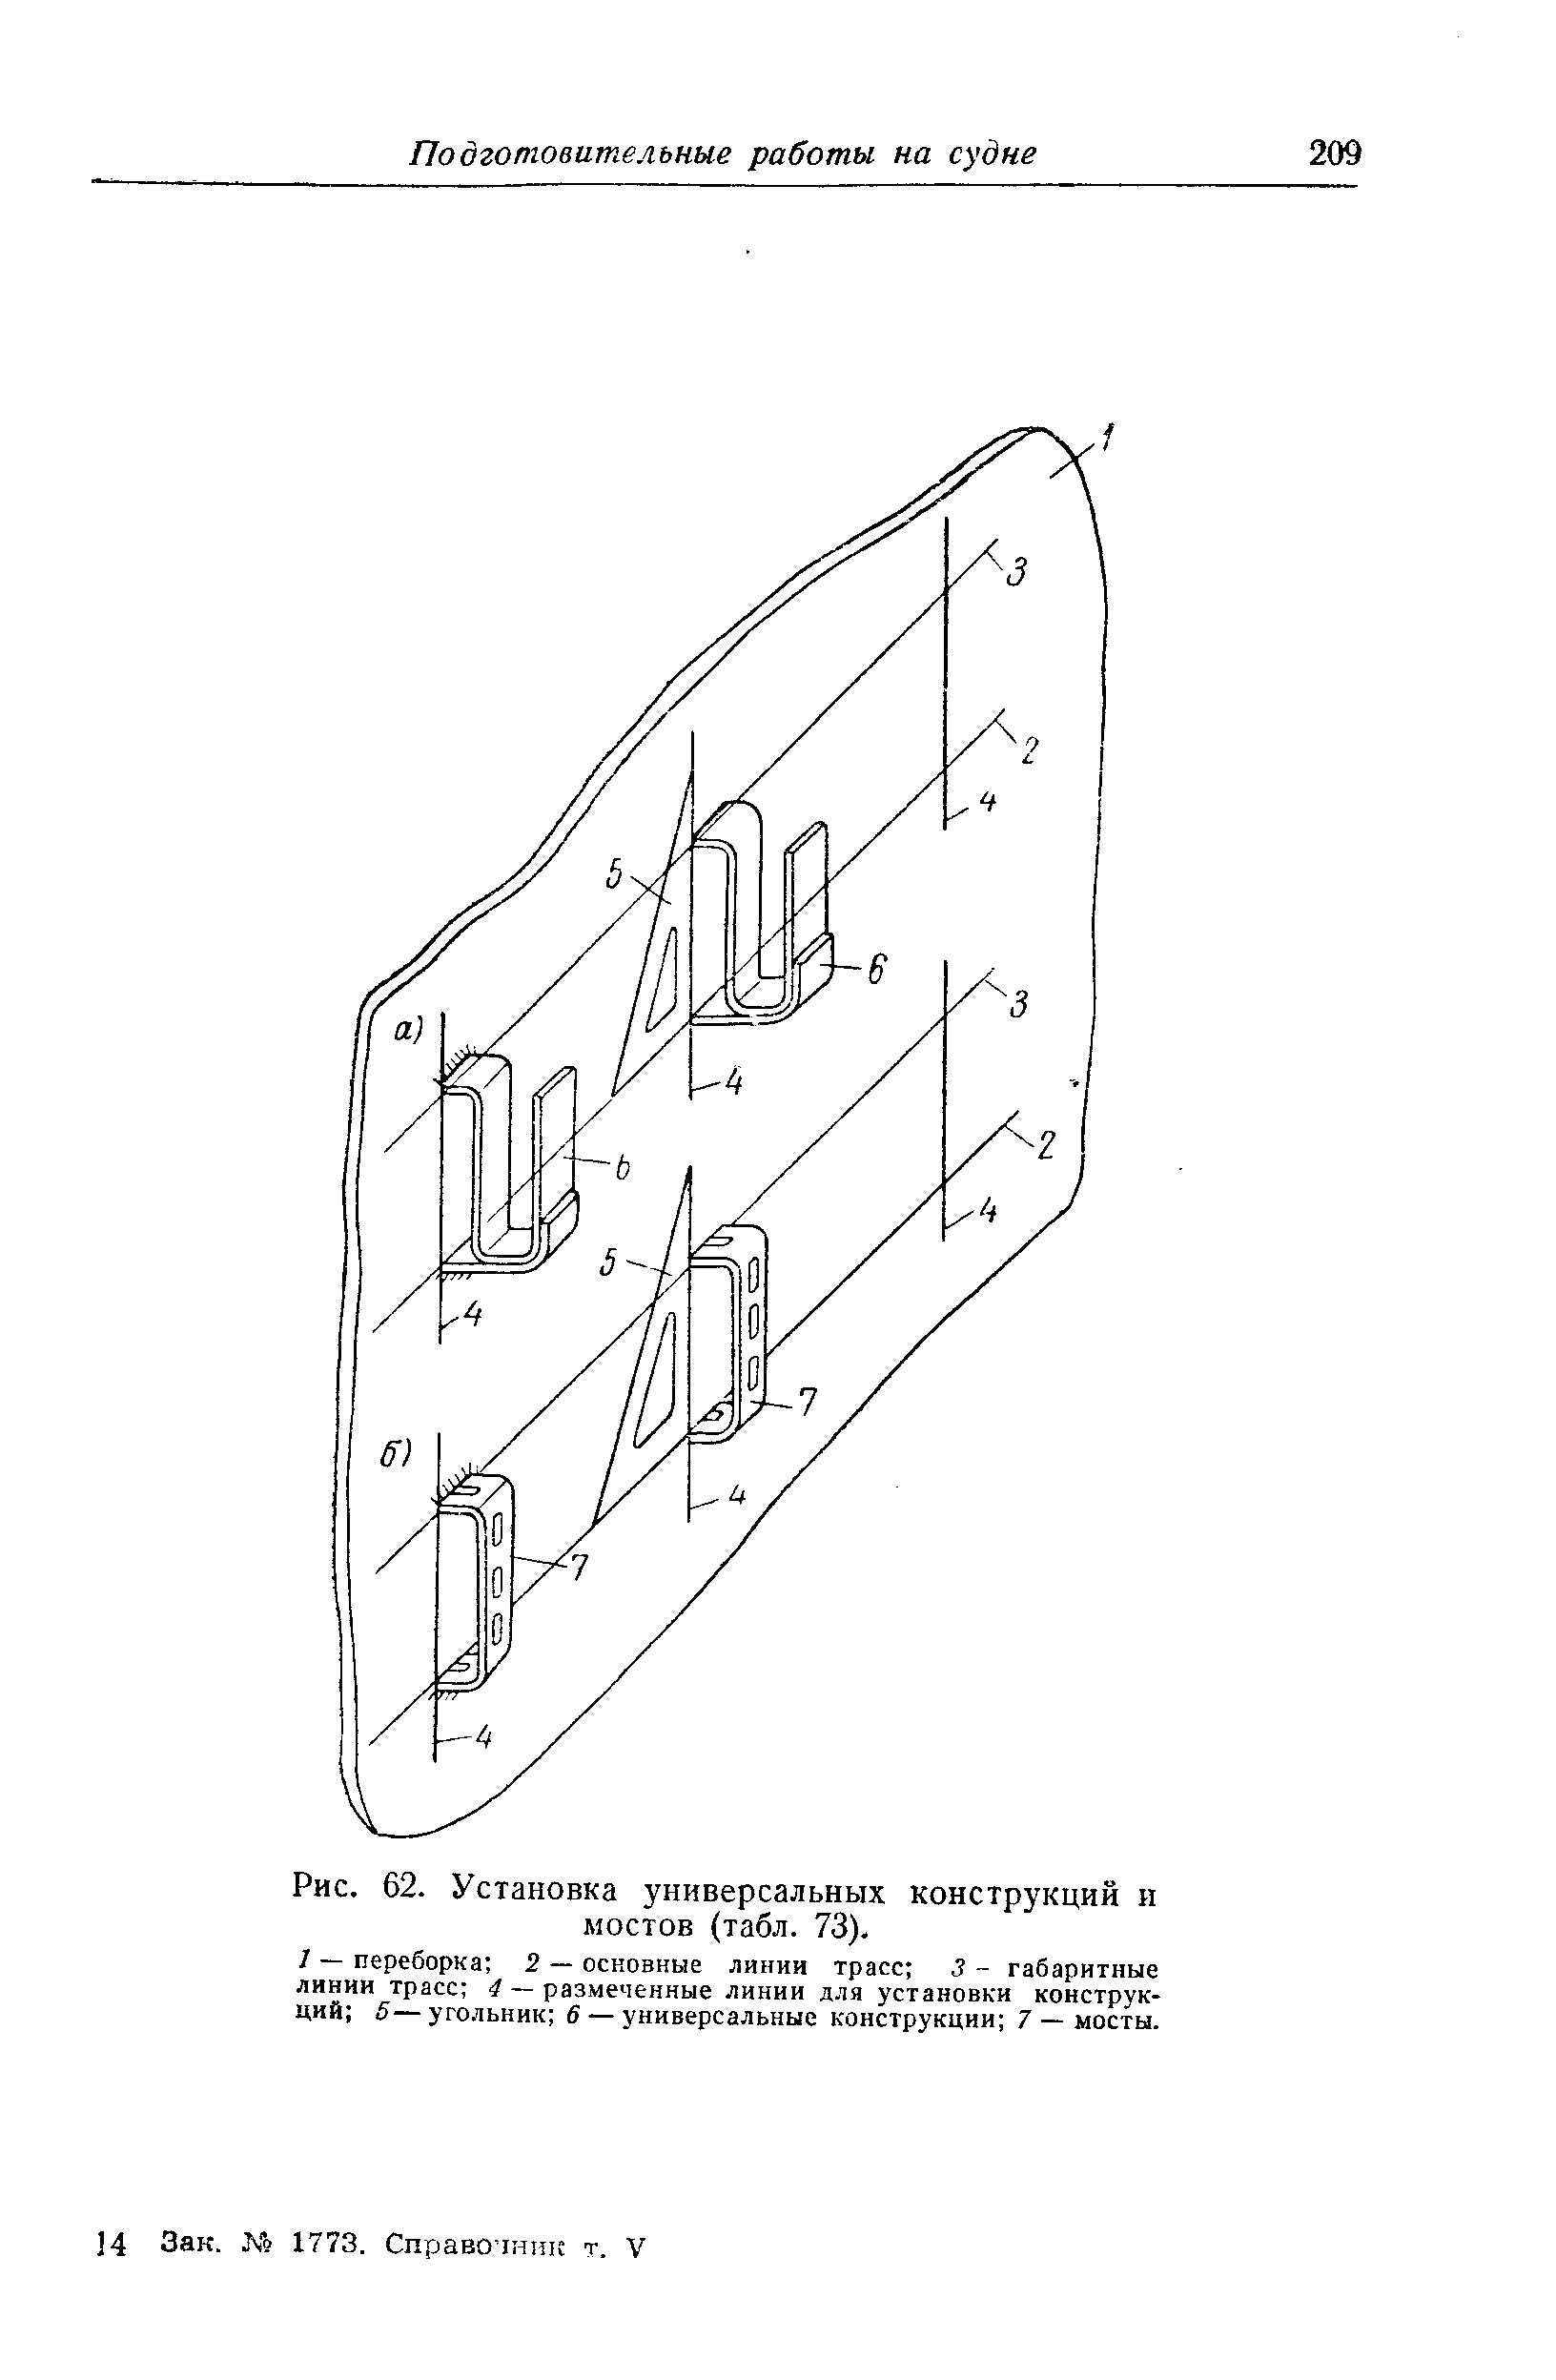 Рис. 62. Установка универсальных конструкций и мостов (табл. 73).
